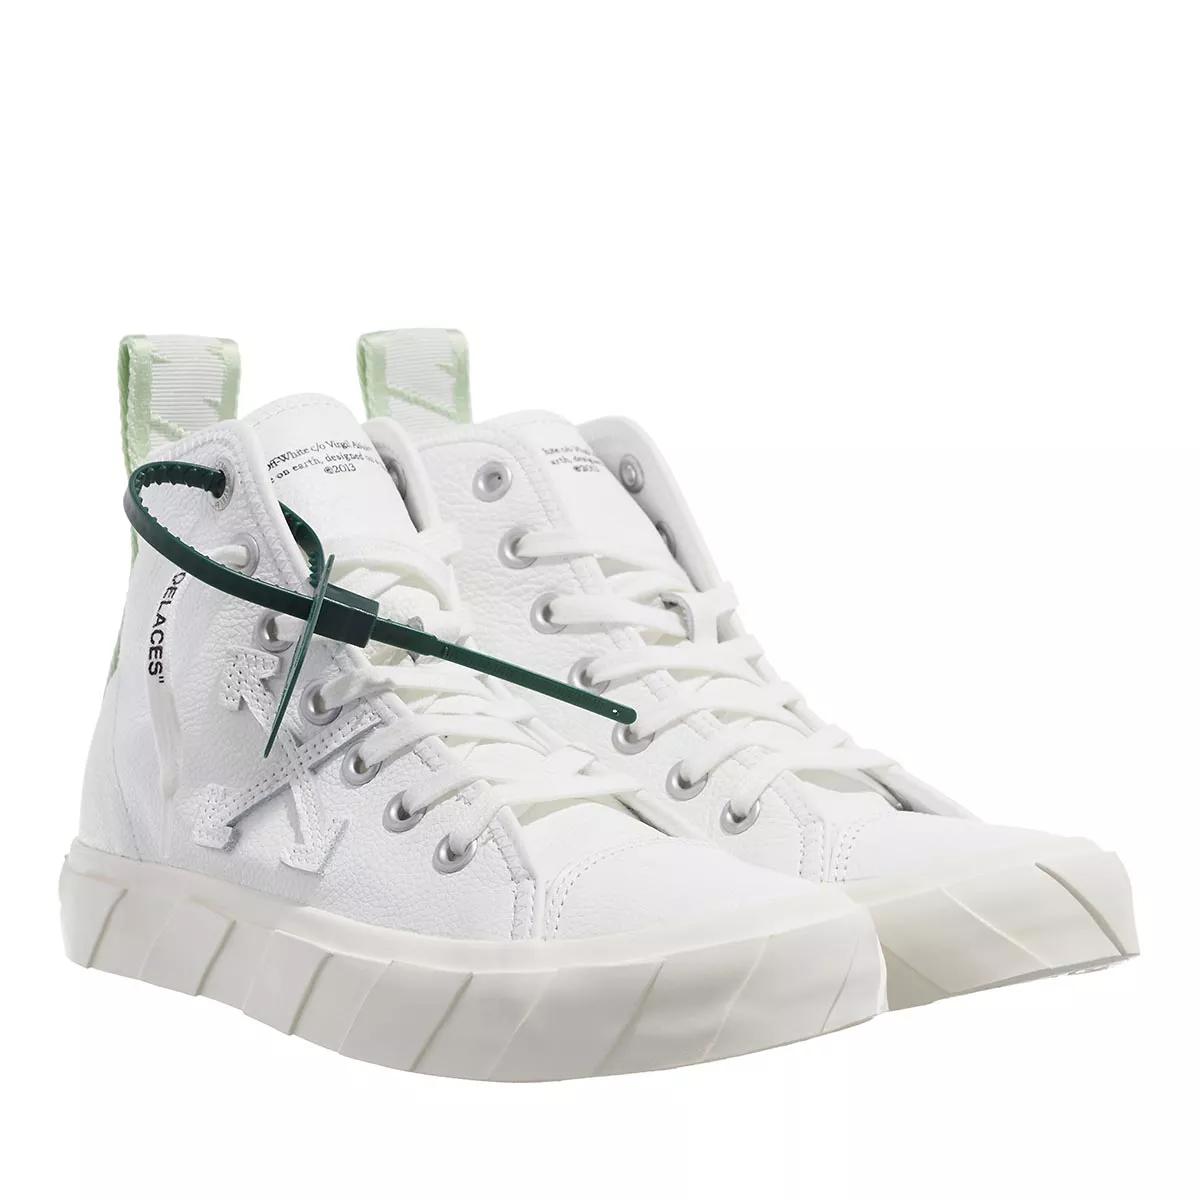 Off-White Sneakers - Mid Top Vulcanized Leather - Gr. 36 (EU) - in Grün - für Damen von Off-White